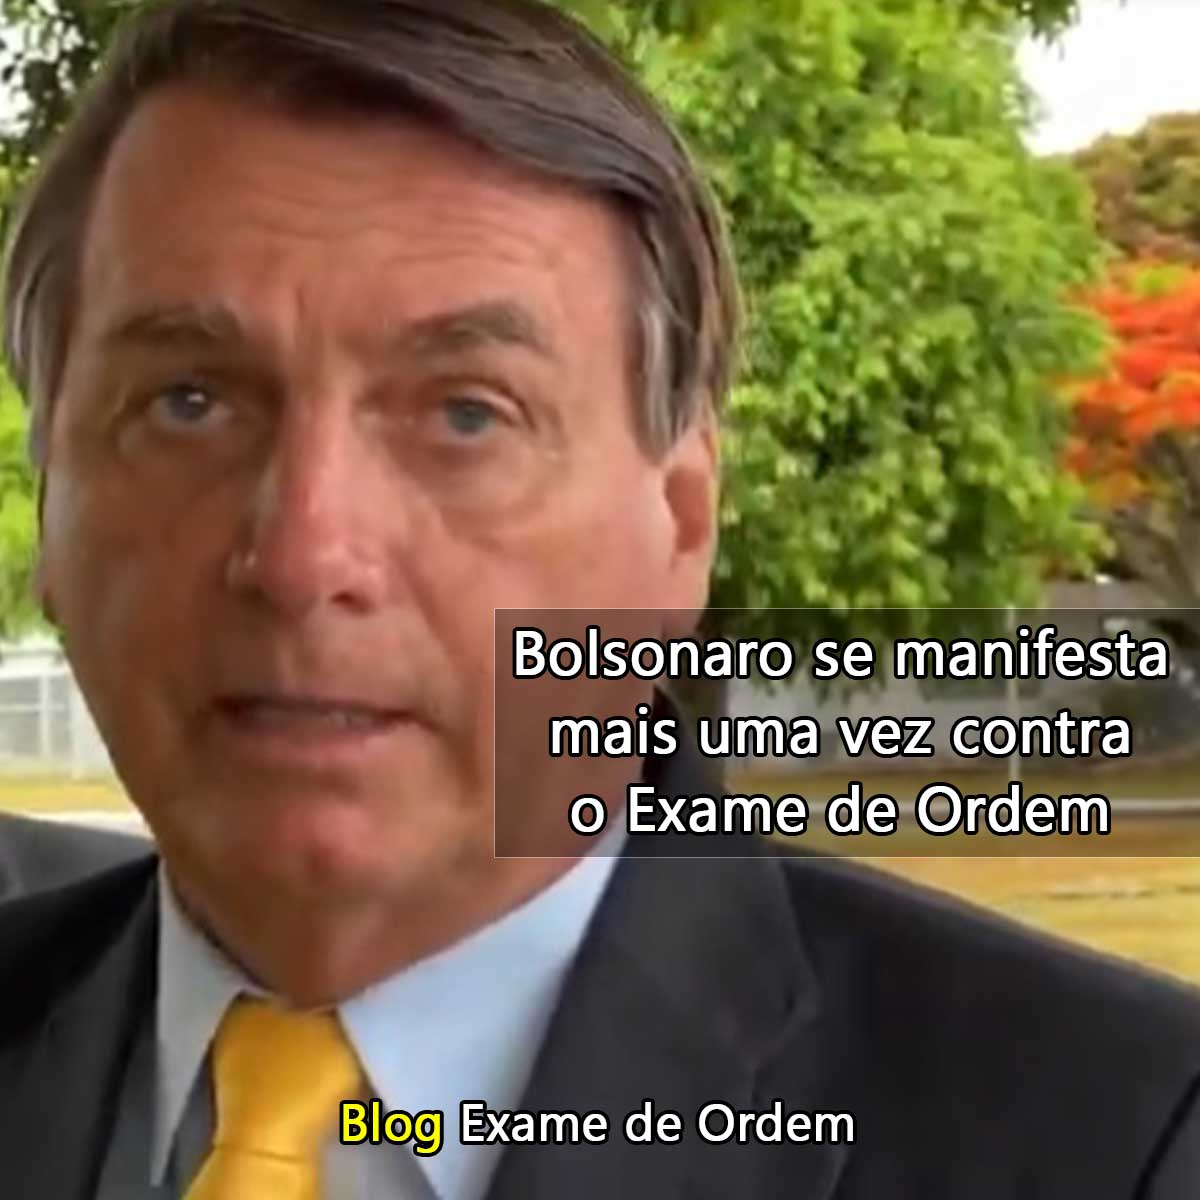 Bolsonaro se manifesta mais uma vez contra o Exame de Ordem